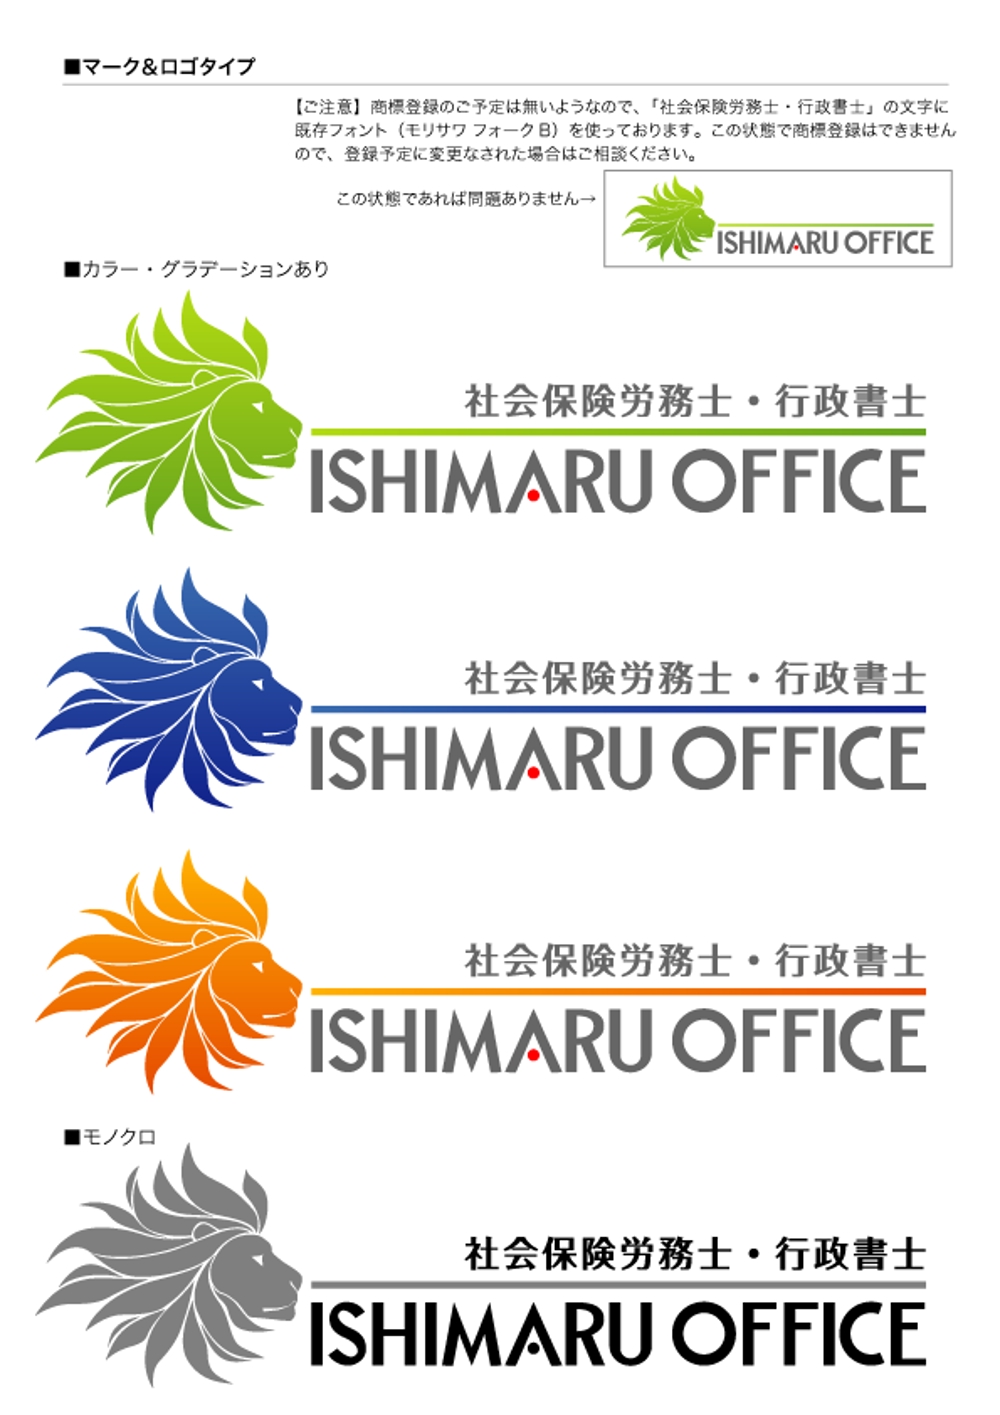 事務所のロゴ、タイプの製作